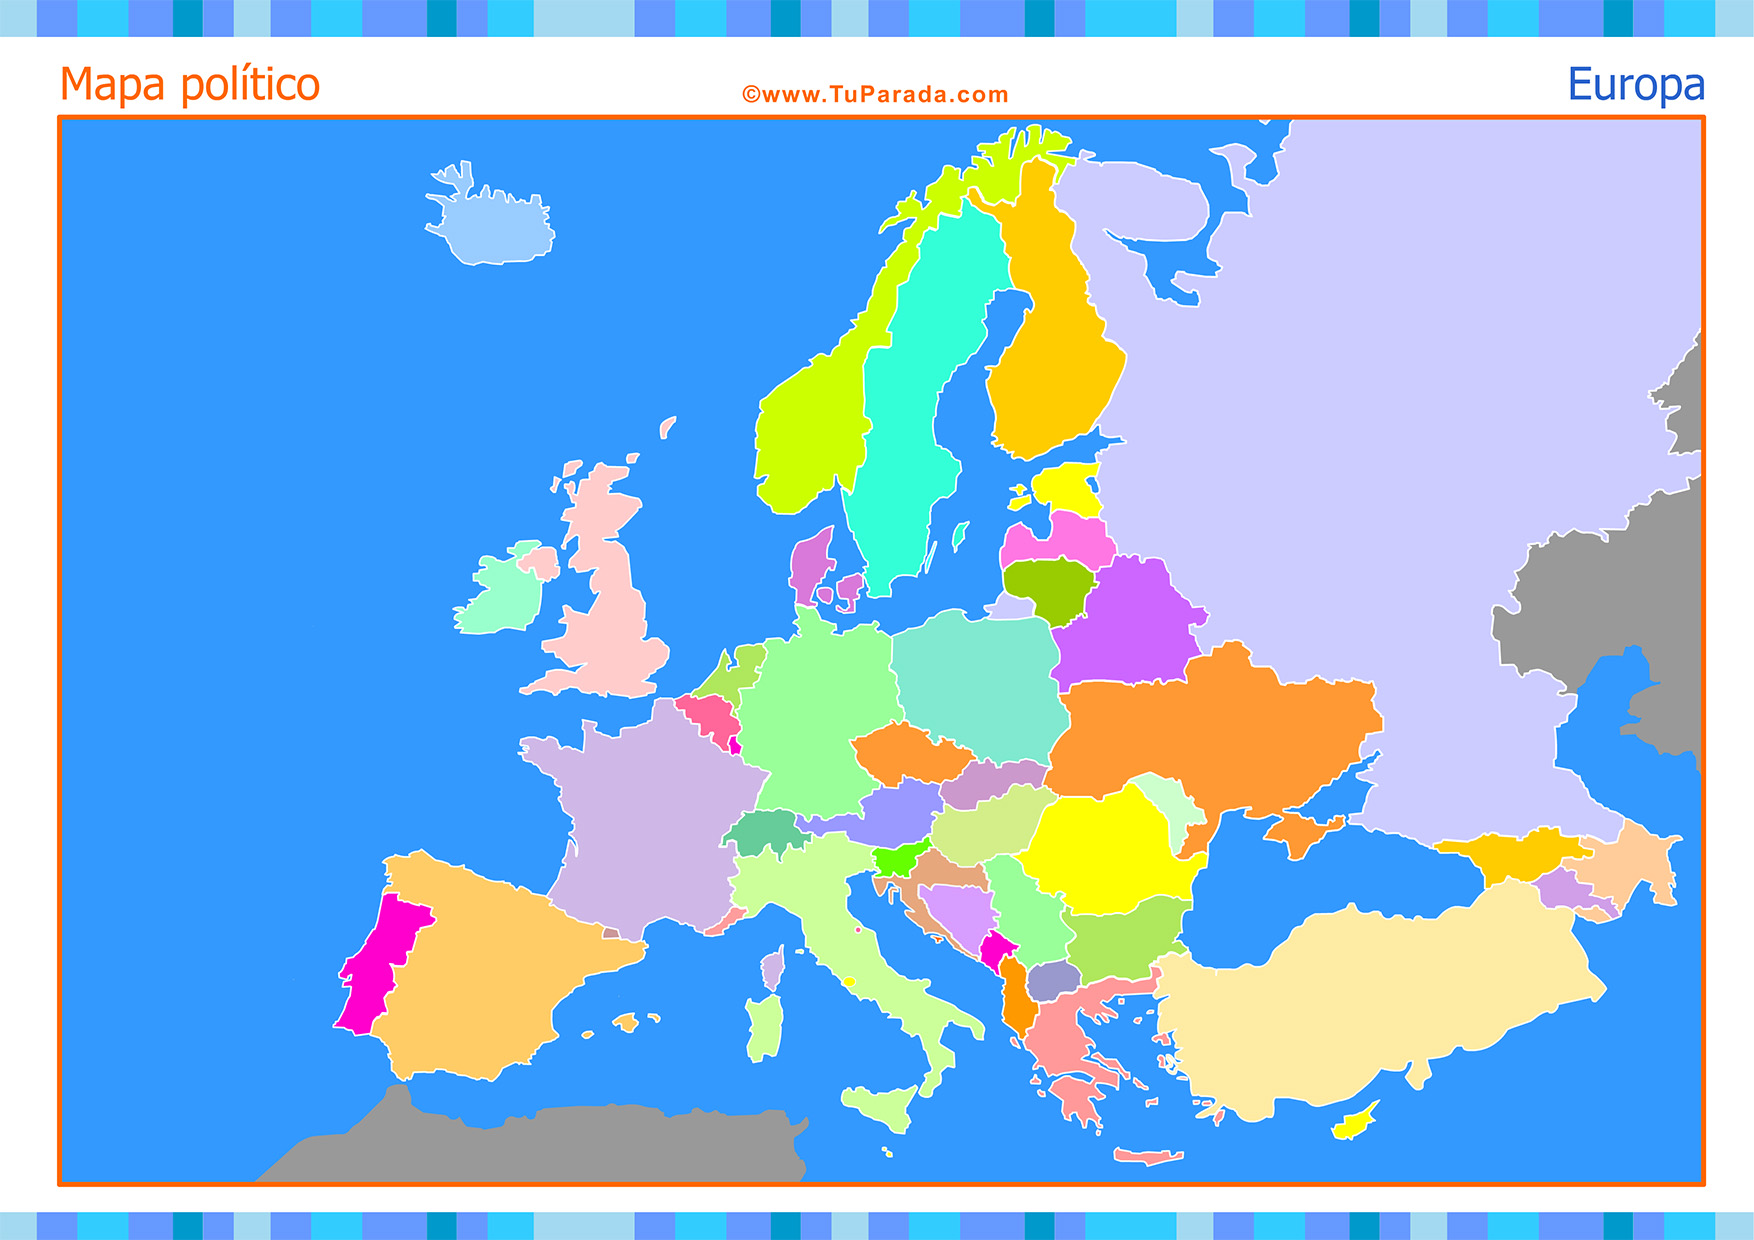 Mapa de Europa para completar